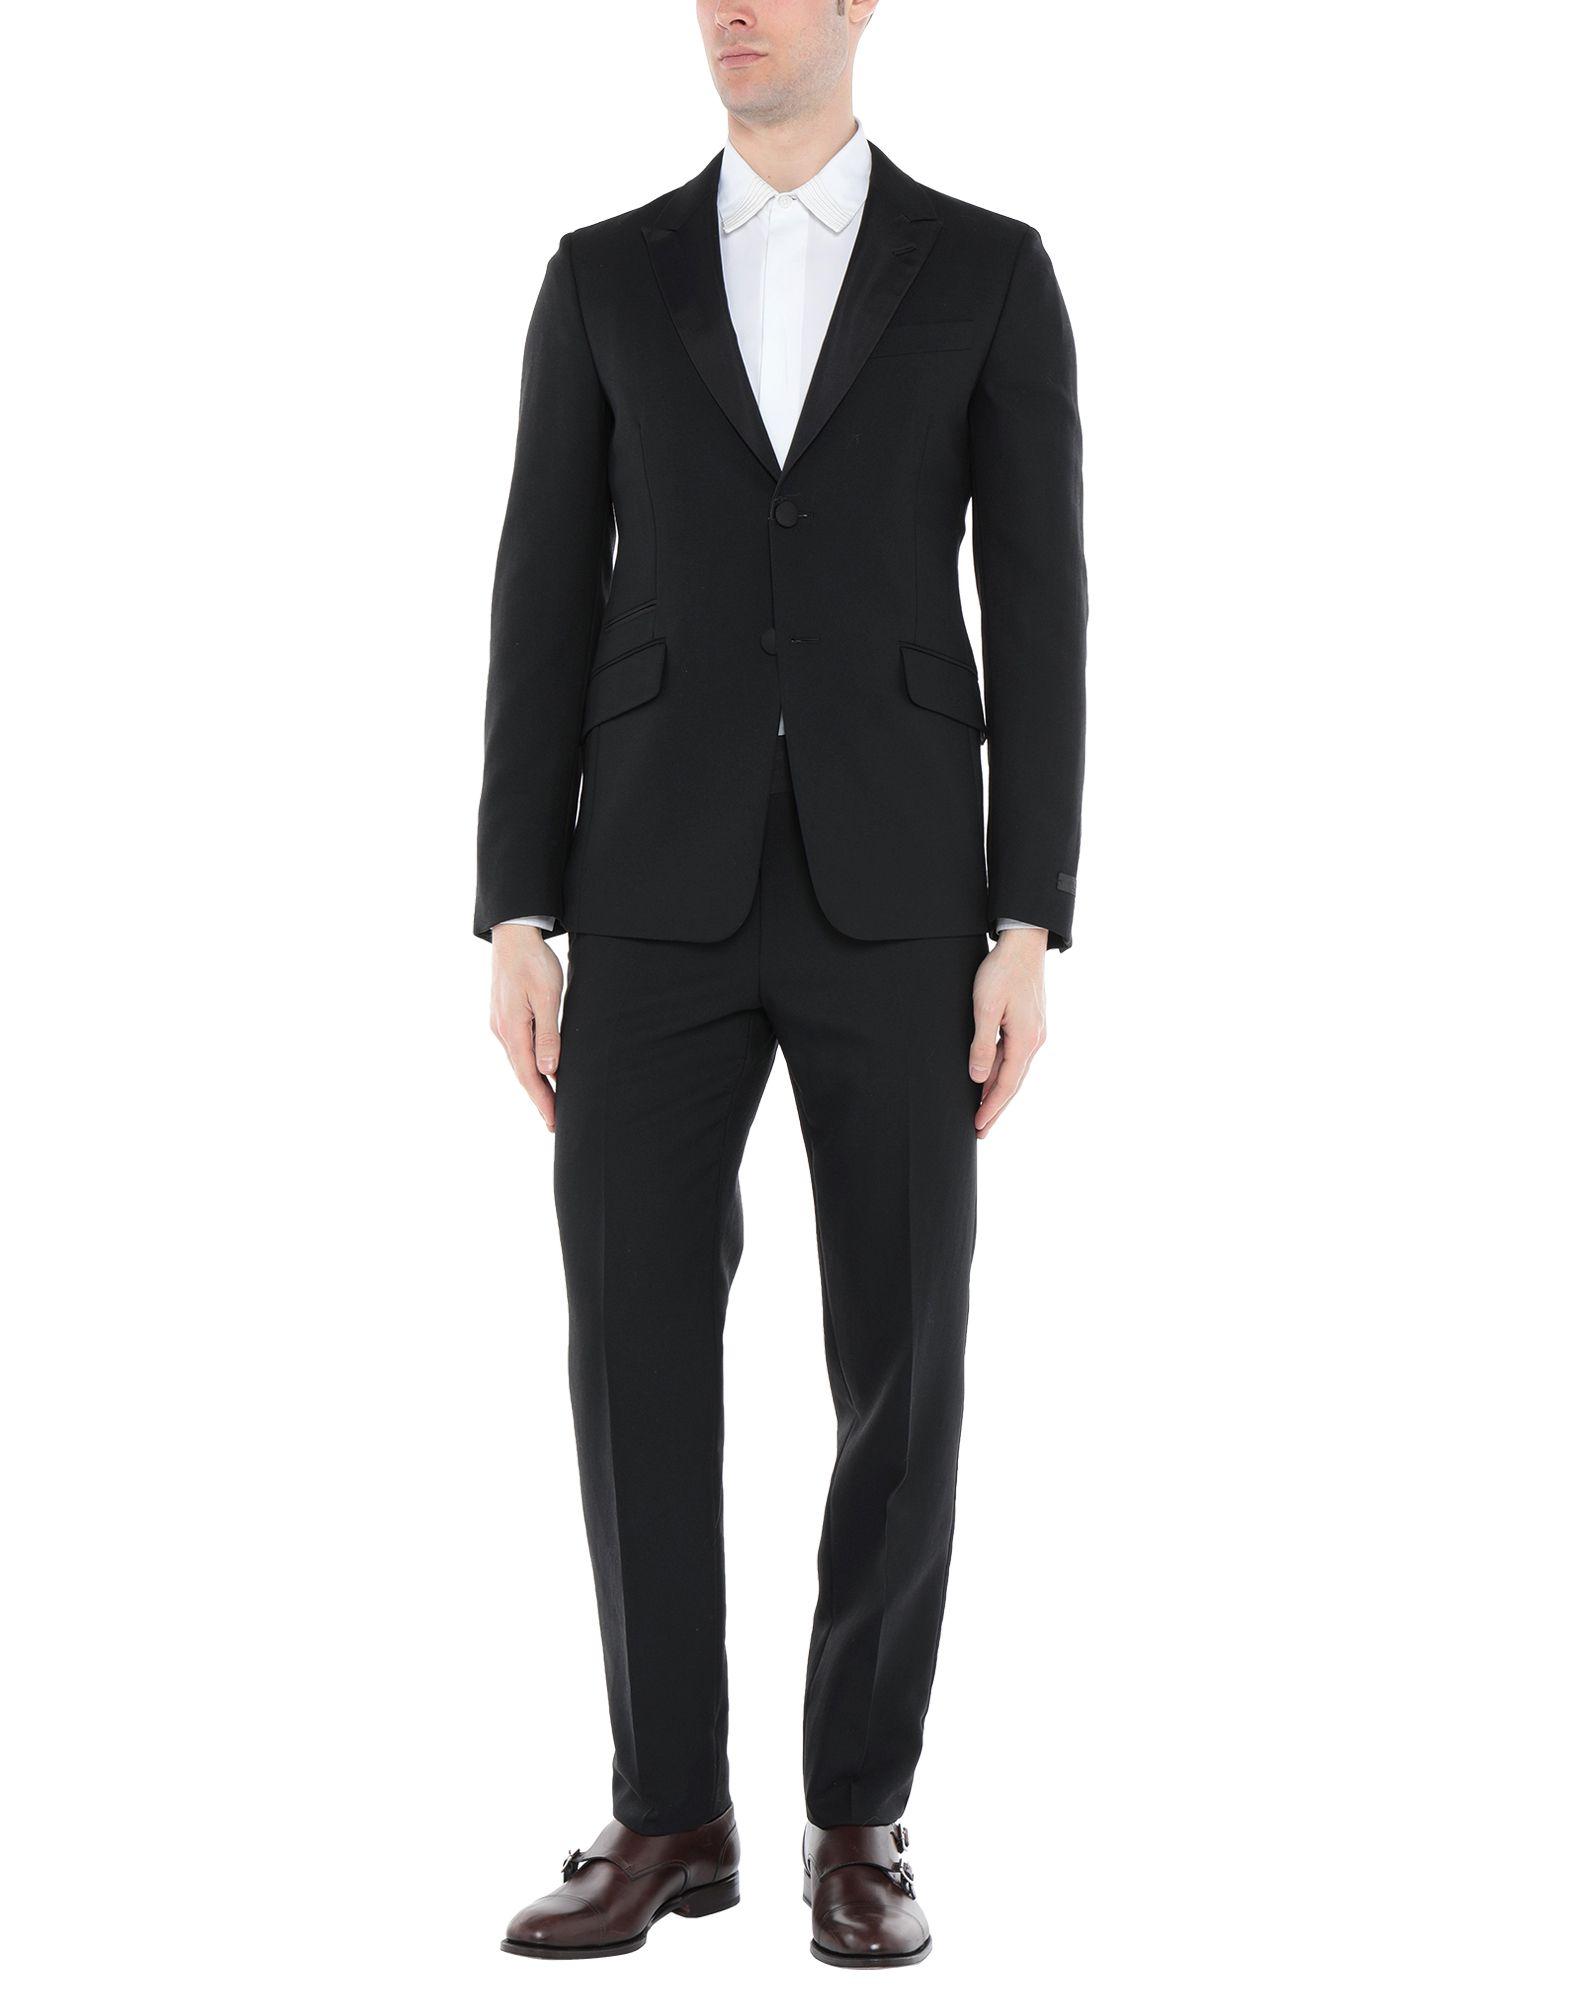 Prada Suit in Black for Men - Lyst